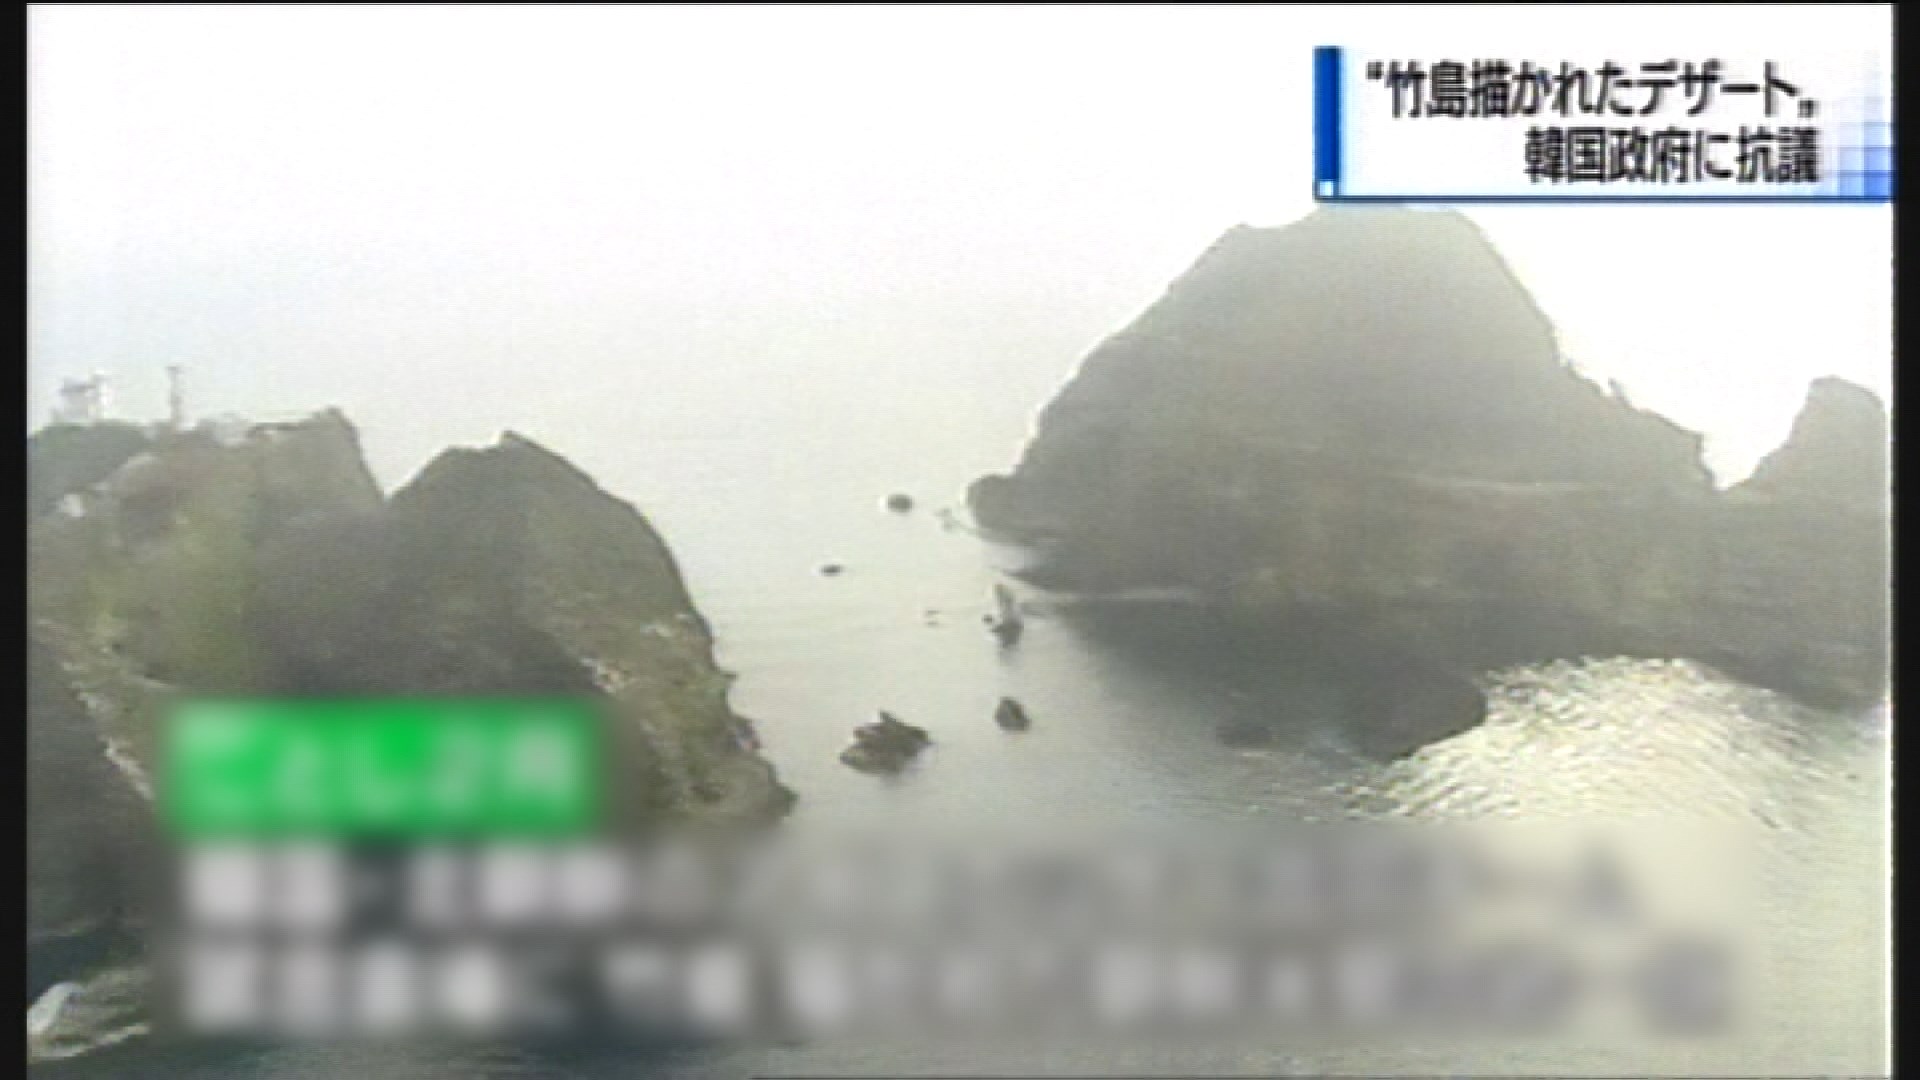 日本抗議南韓擬在爭議島嶼進行海洋調查